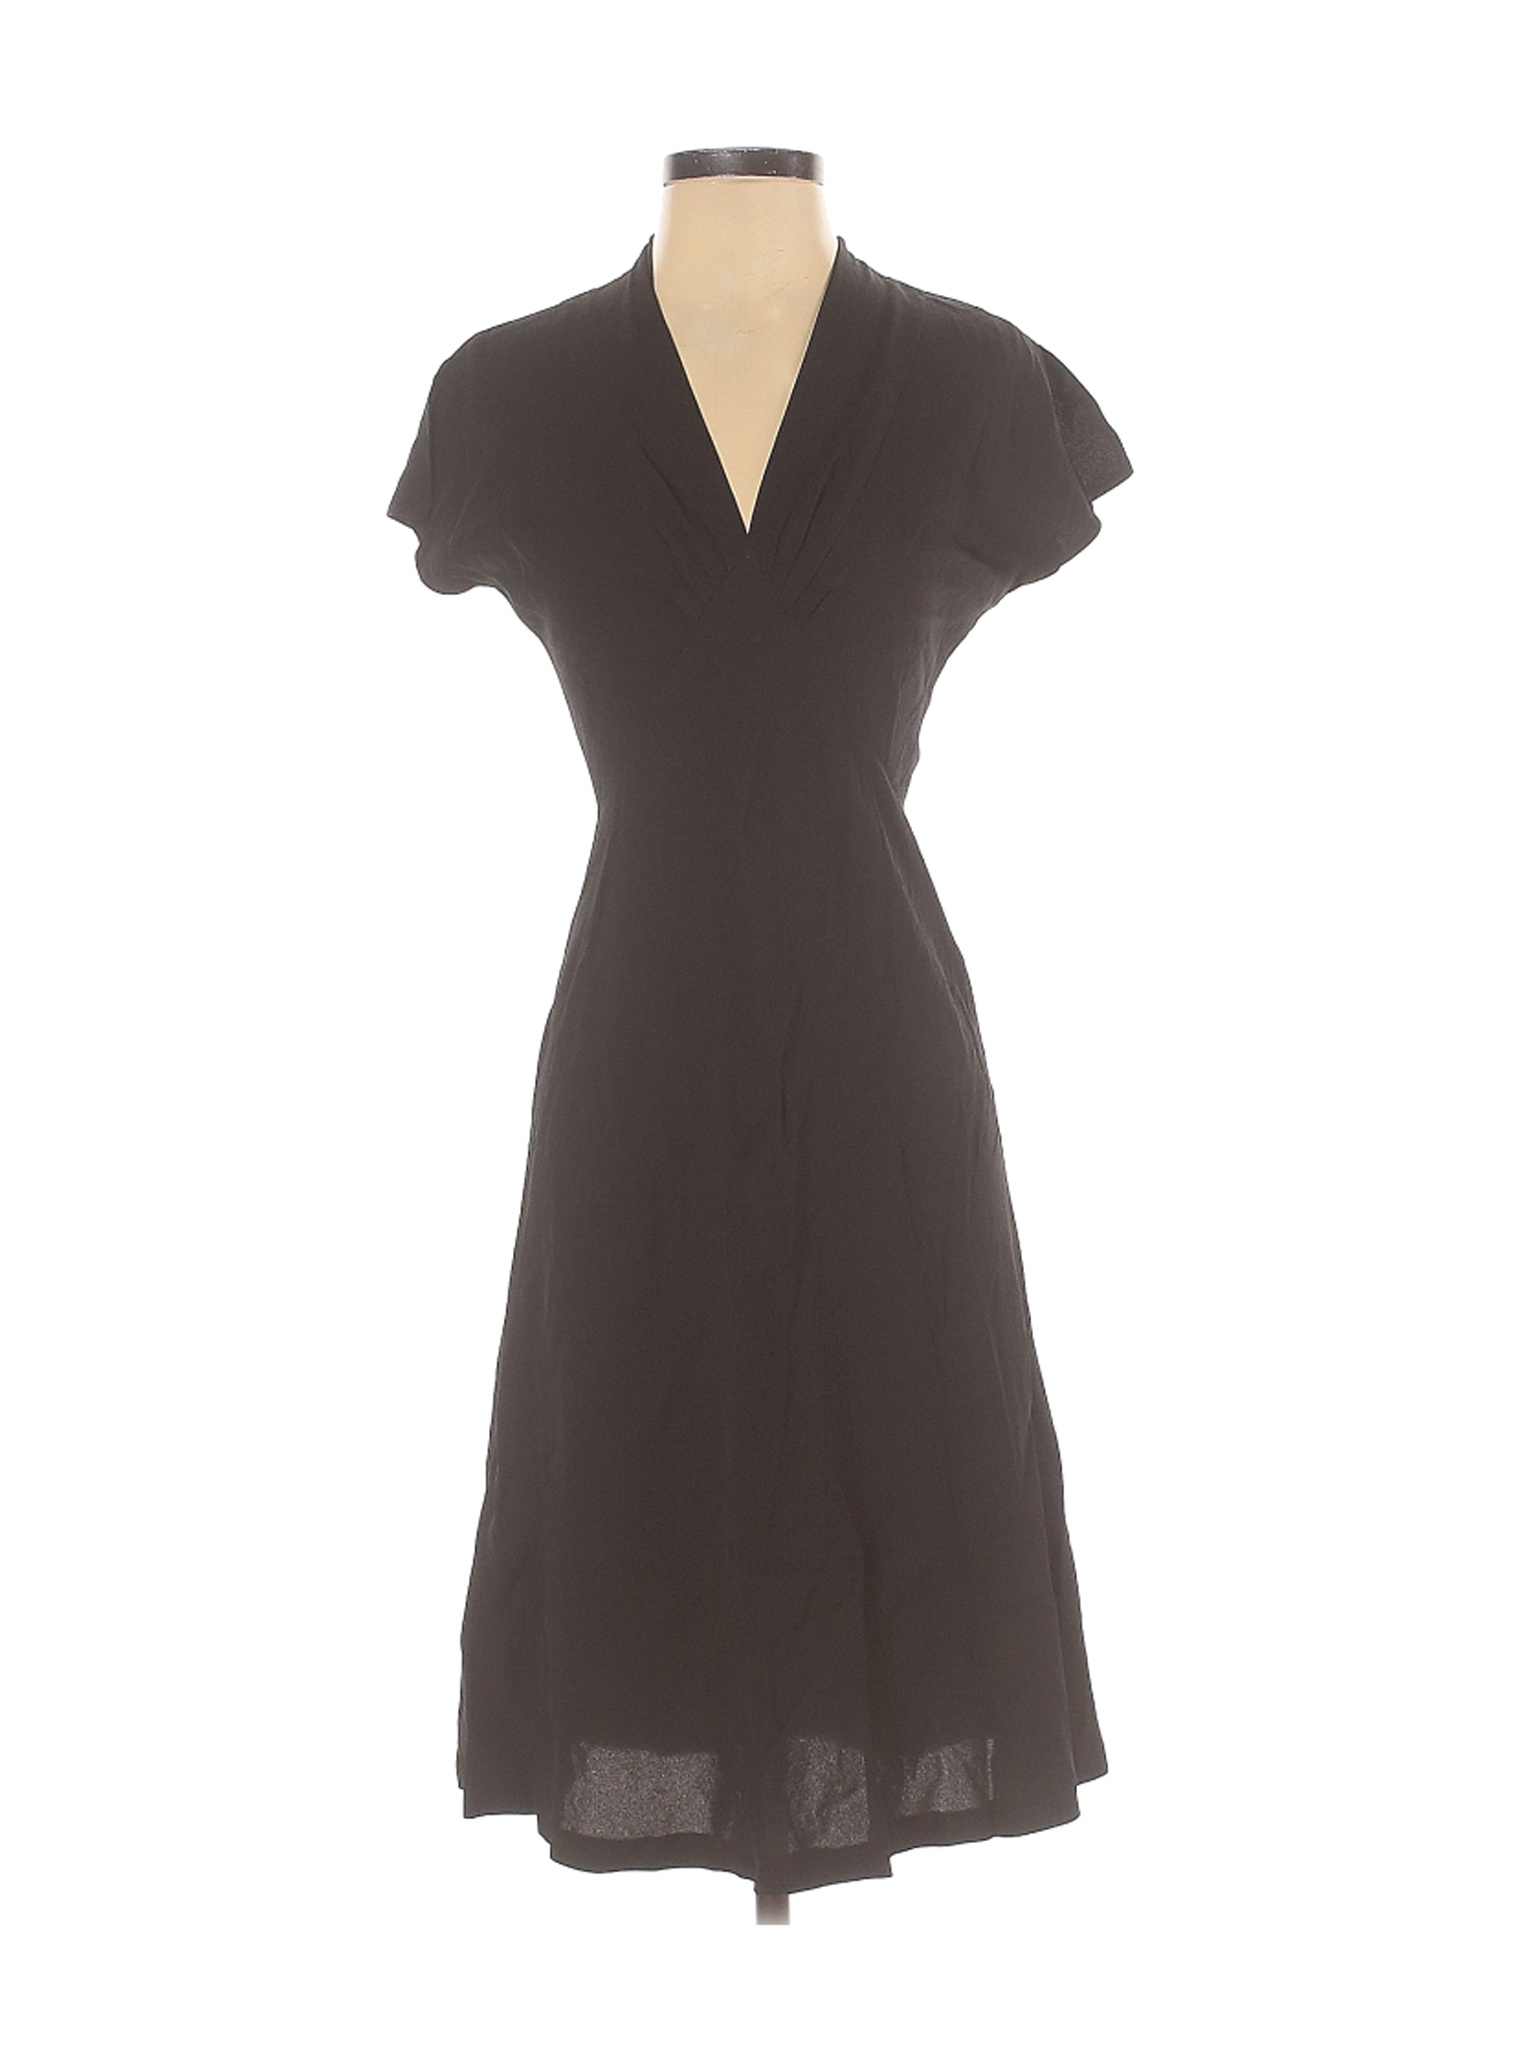 NWT Ralph Lauren Women Brown Casual Dress 2 | eBay